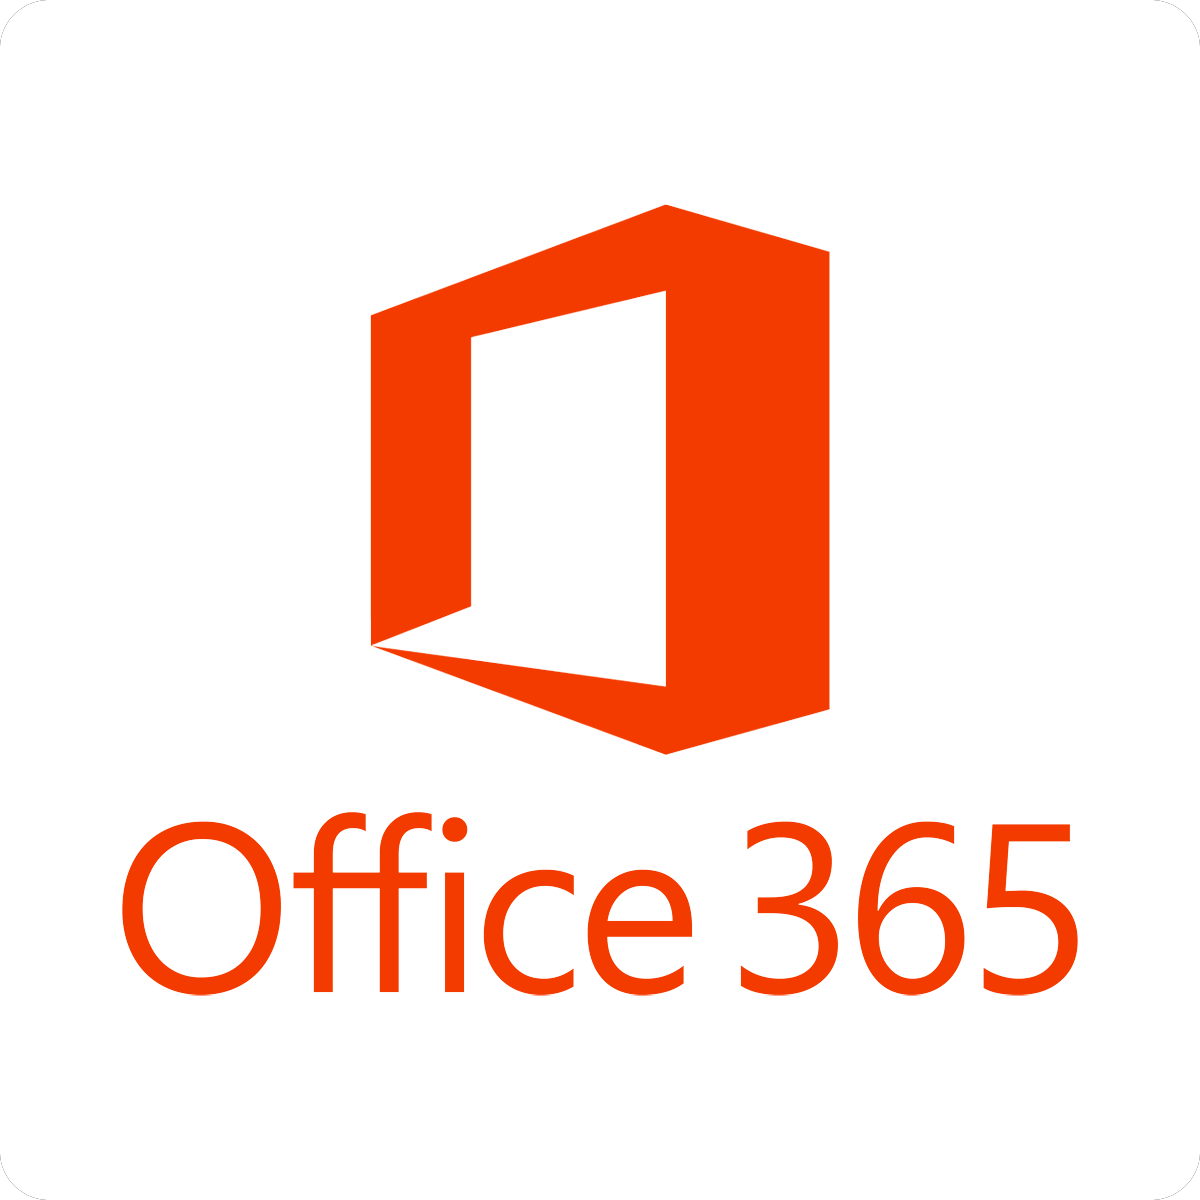 Prestataire informatique certifié Office 365